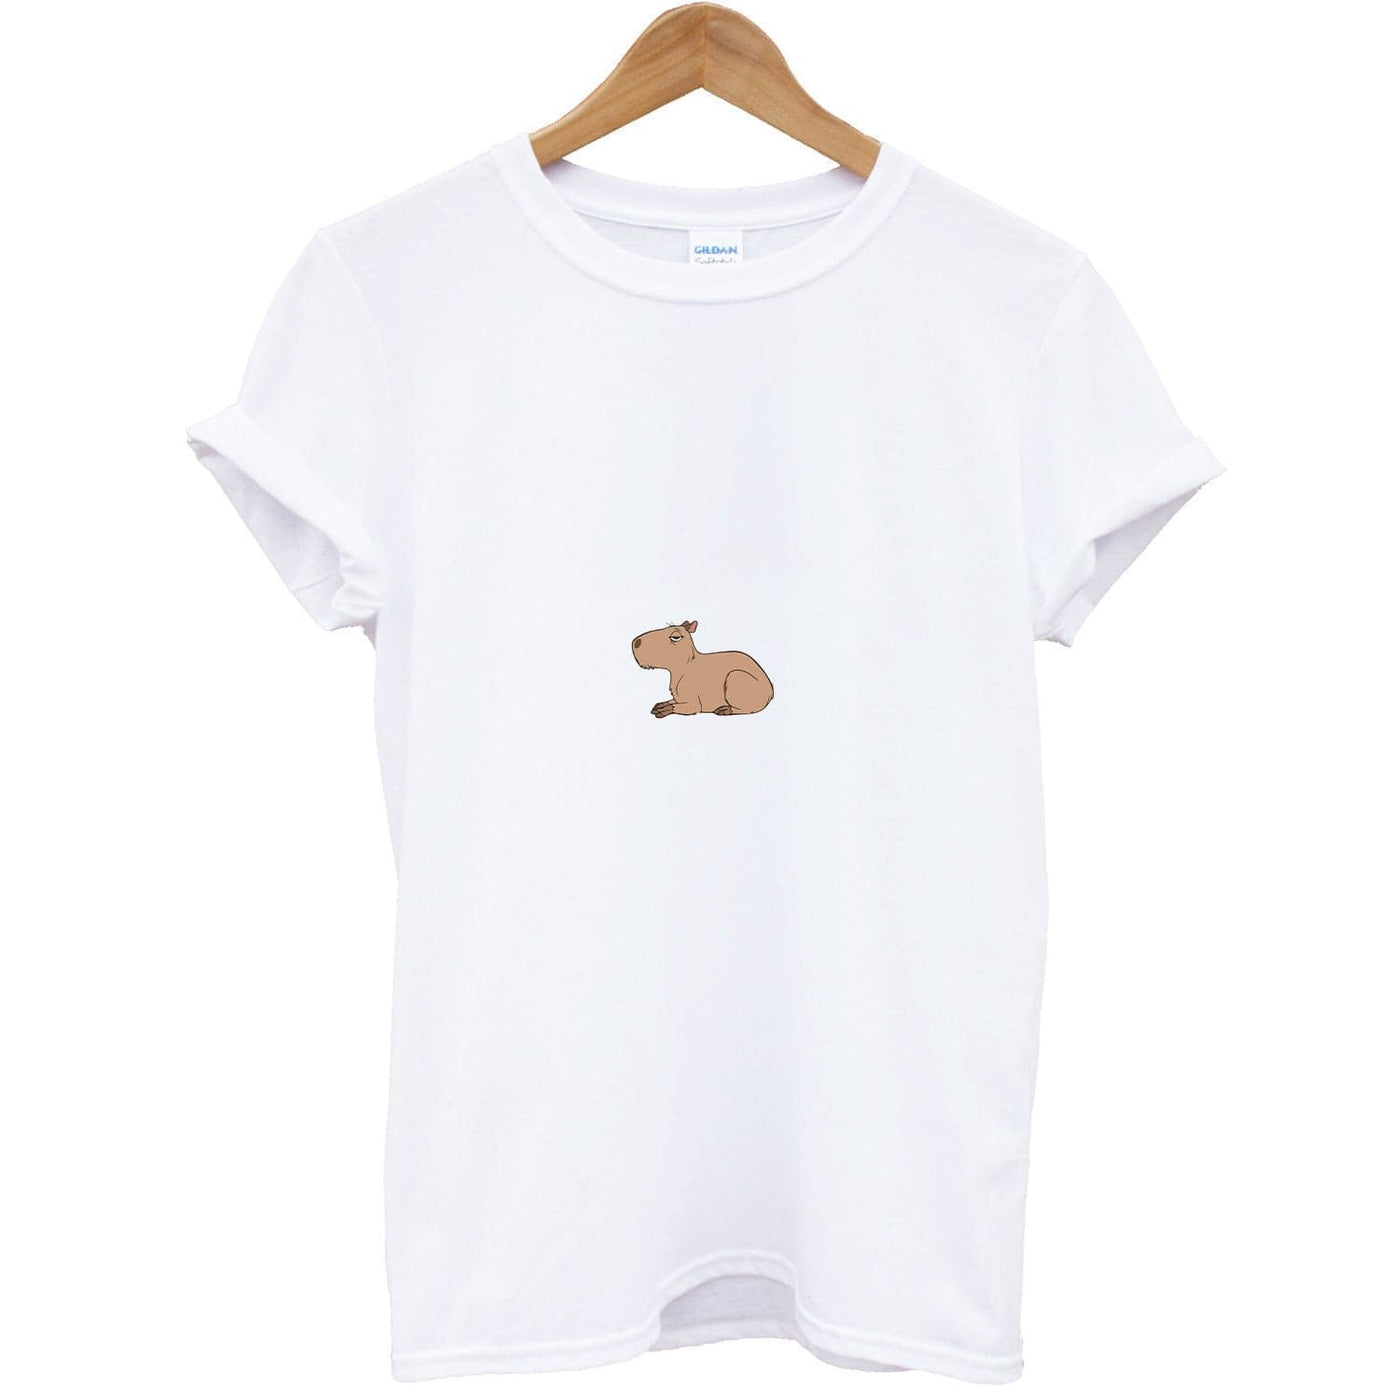 Chispi - Encanto  T-Shirt